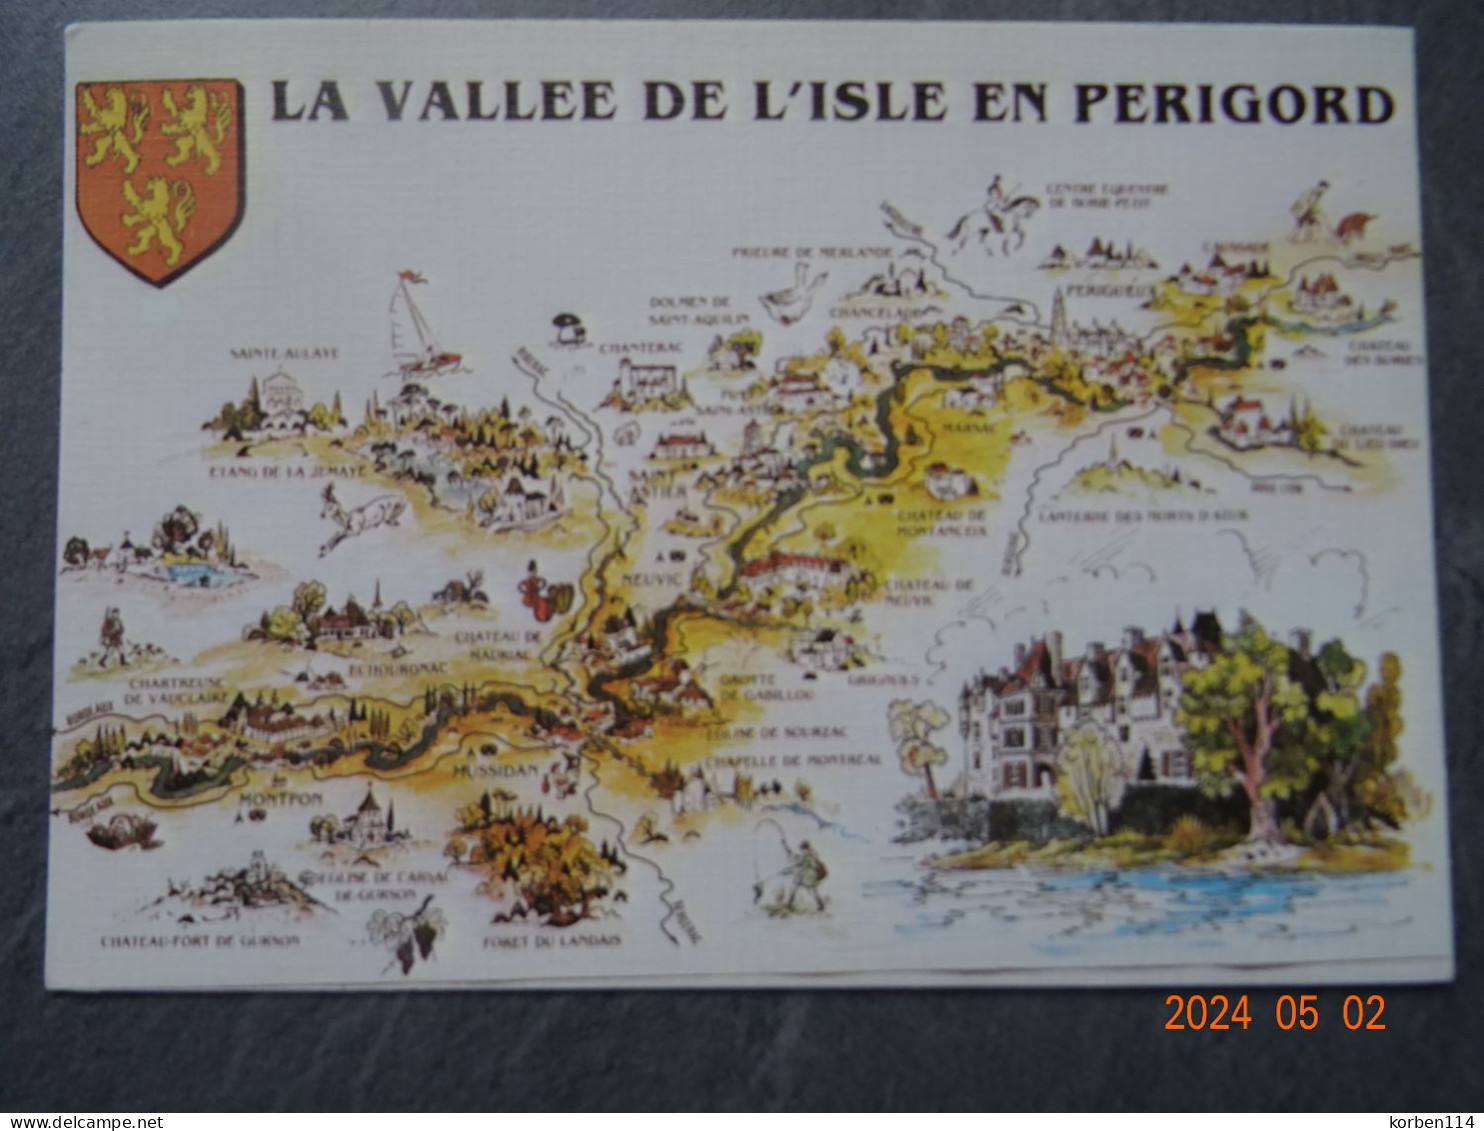 LA VALLEE DE L'ISLE  EN PERIGORD - Sarlat La Caneda